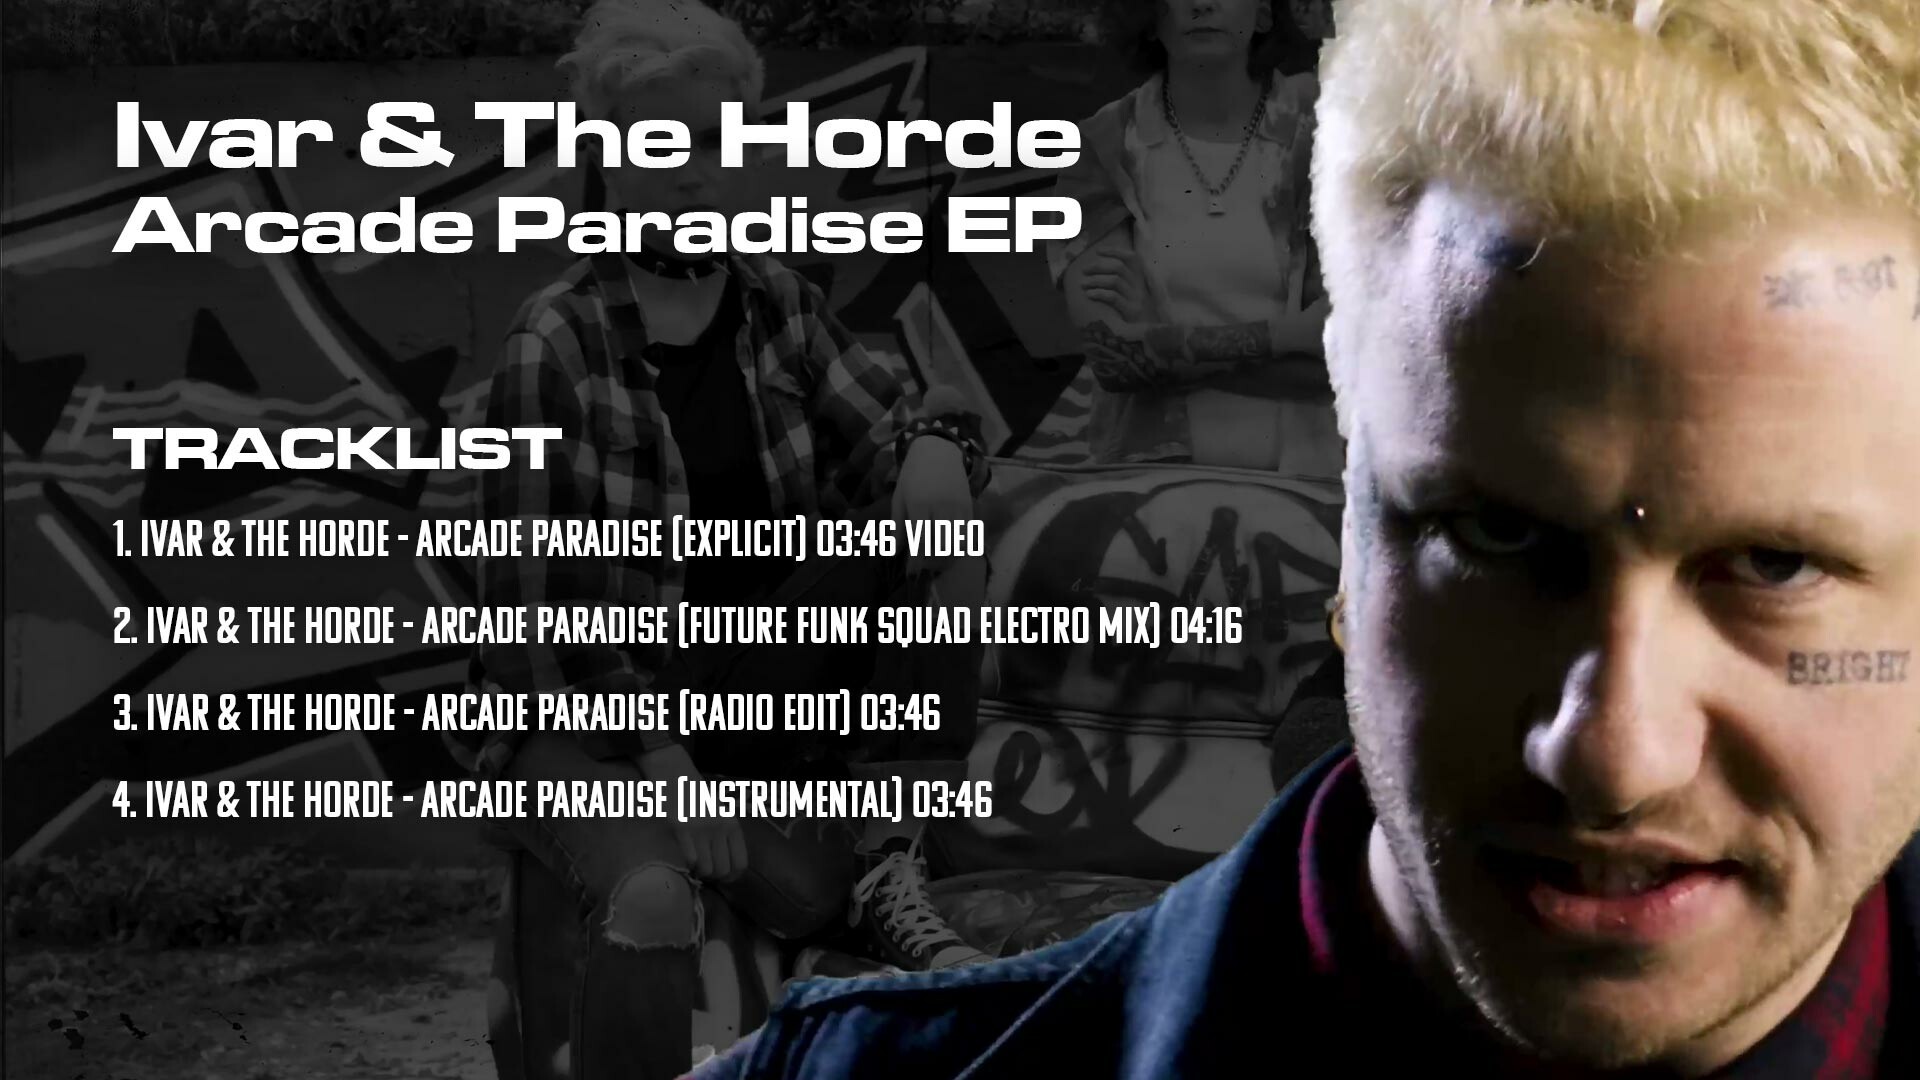 Arcade Paradise - Arcade Paradise EP on Steam